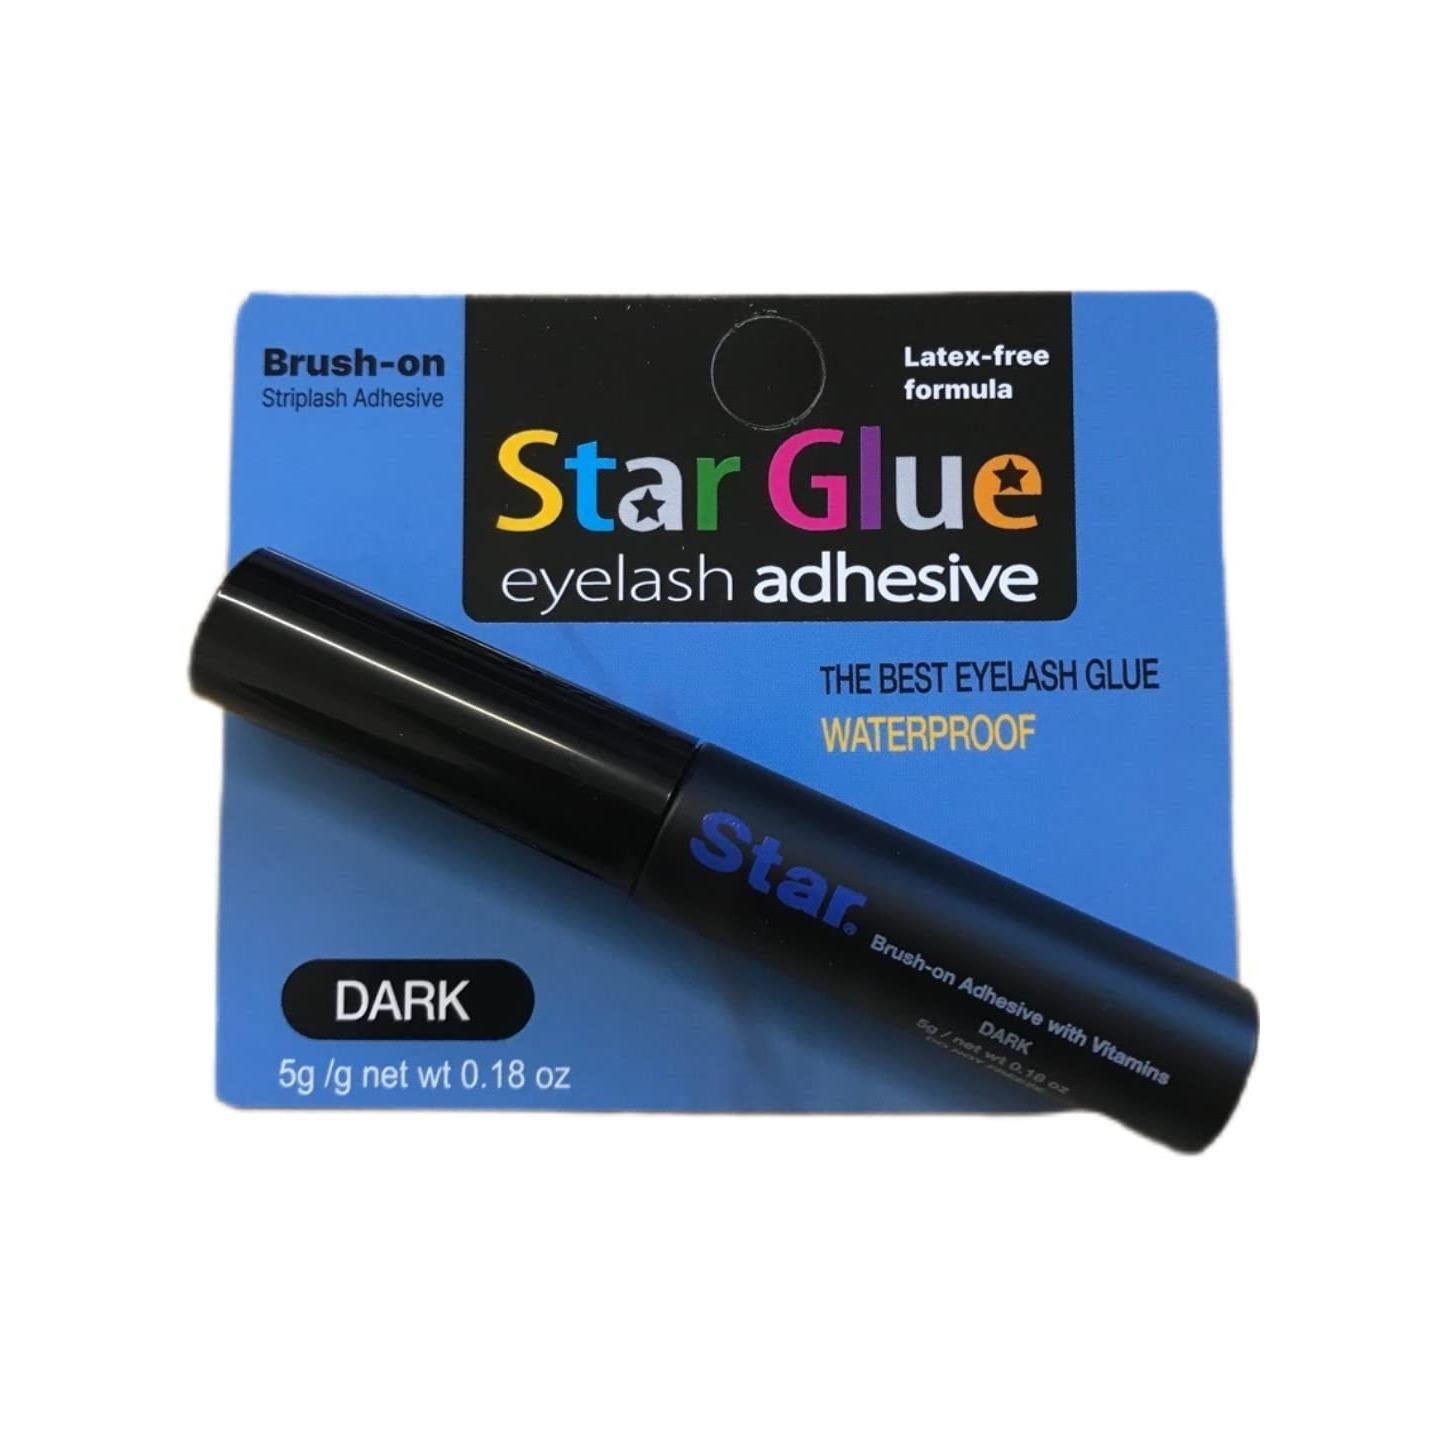 Star Glue Super Strong Eyelash Glue Adhesive Dark Promotes Appearance of Longer, Thicker Eyelashes (Brush-on)